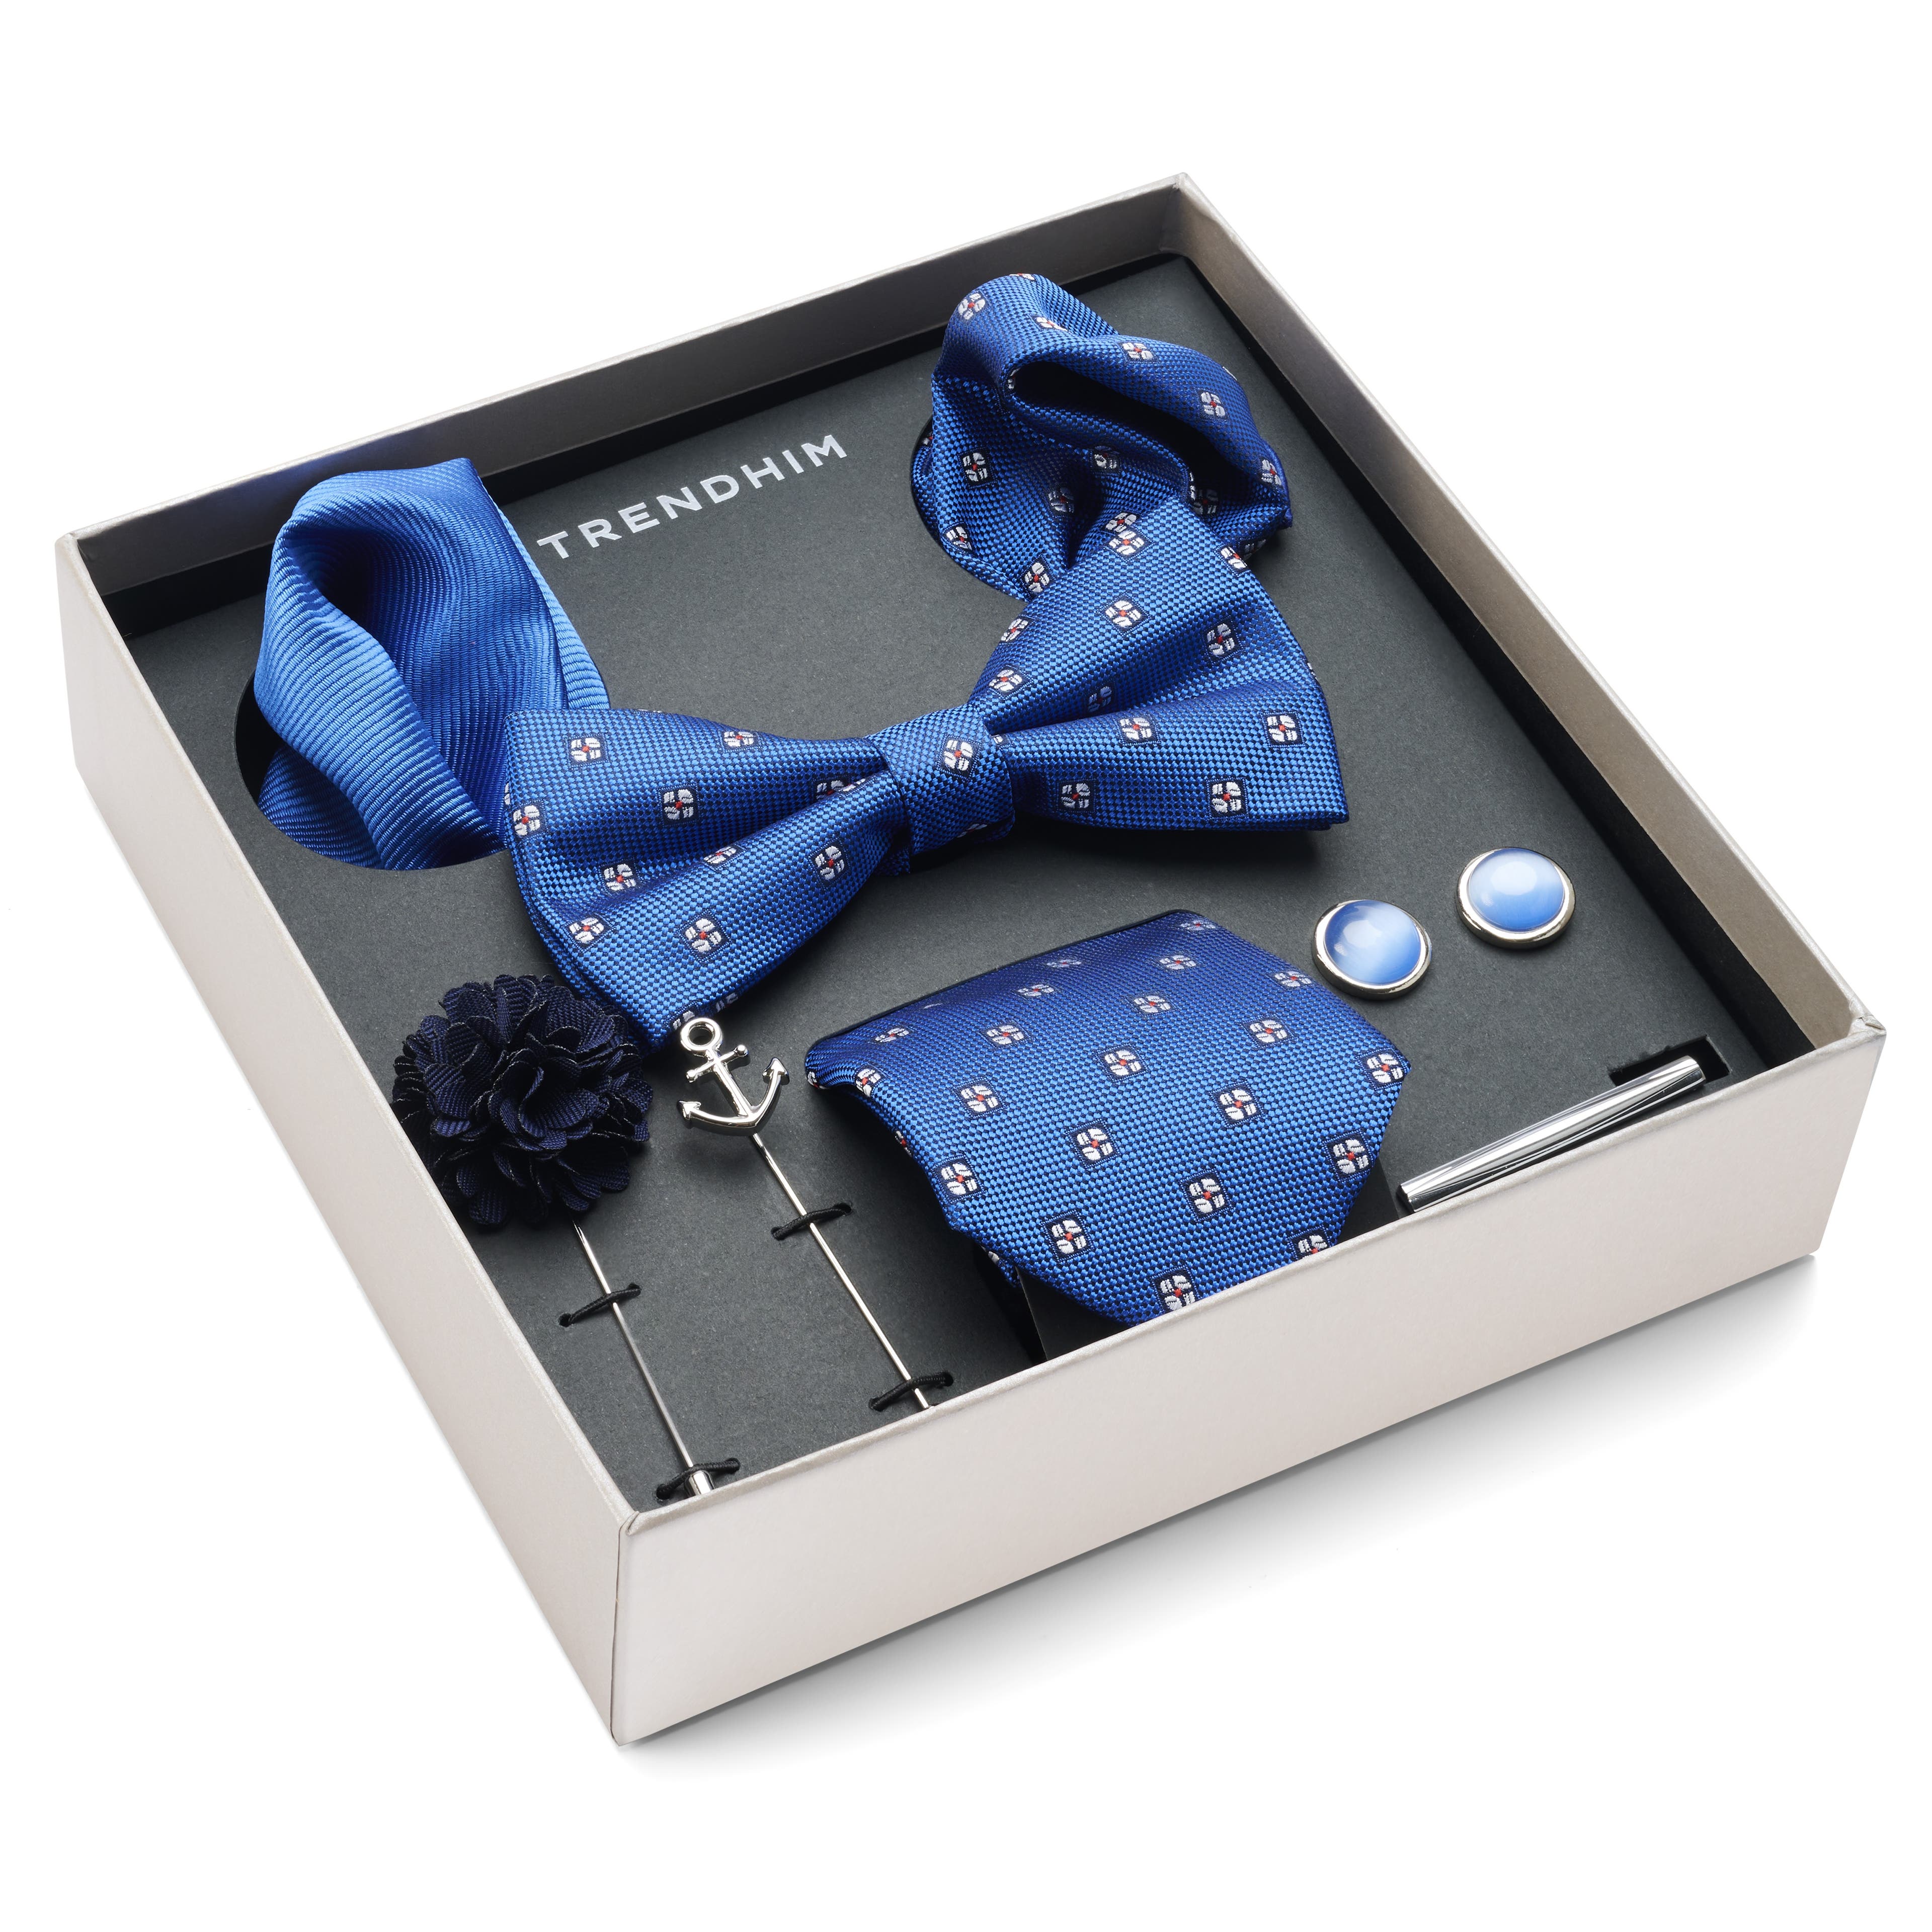 Dárková krabička s doplňky k obleku | Sada v modré, bílé a stříbrné barvě